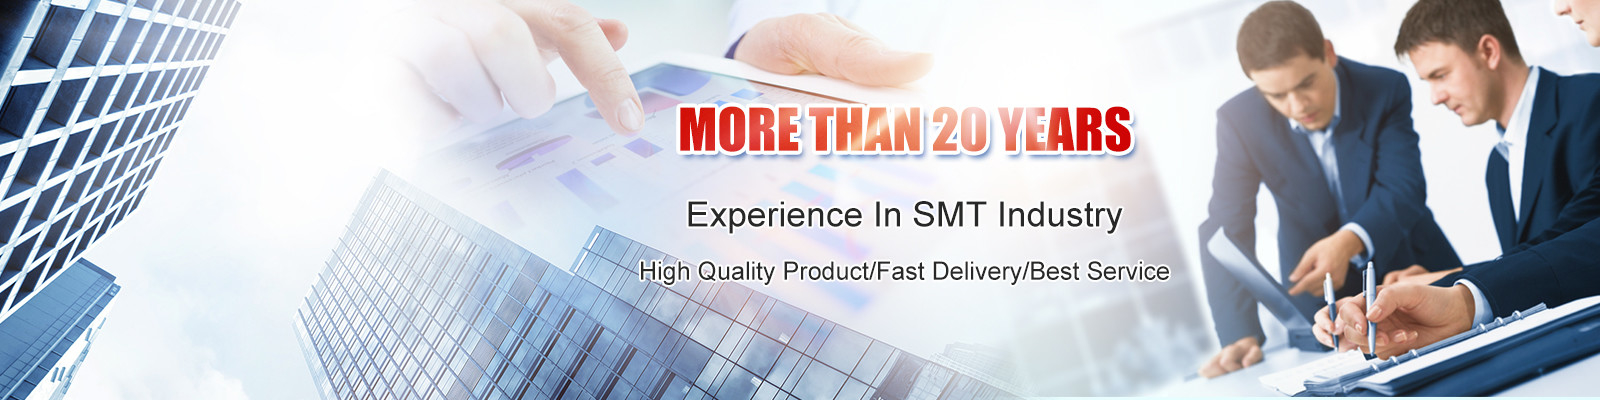 jakość Dysza SMT fabryka